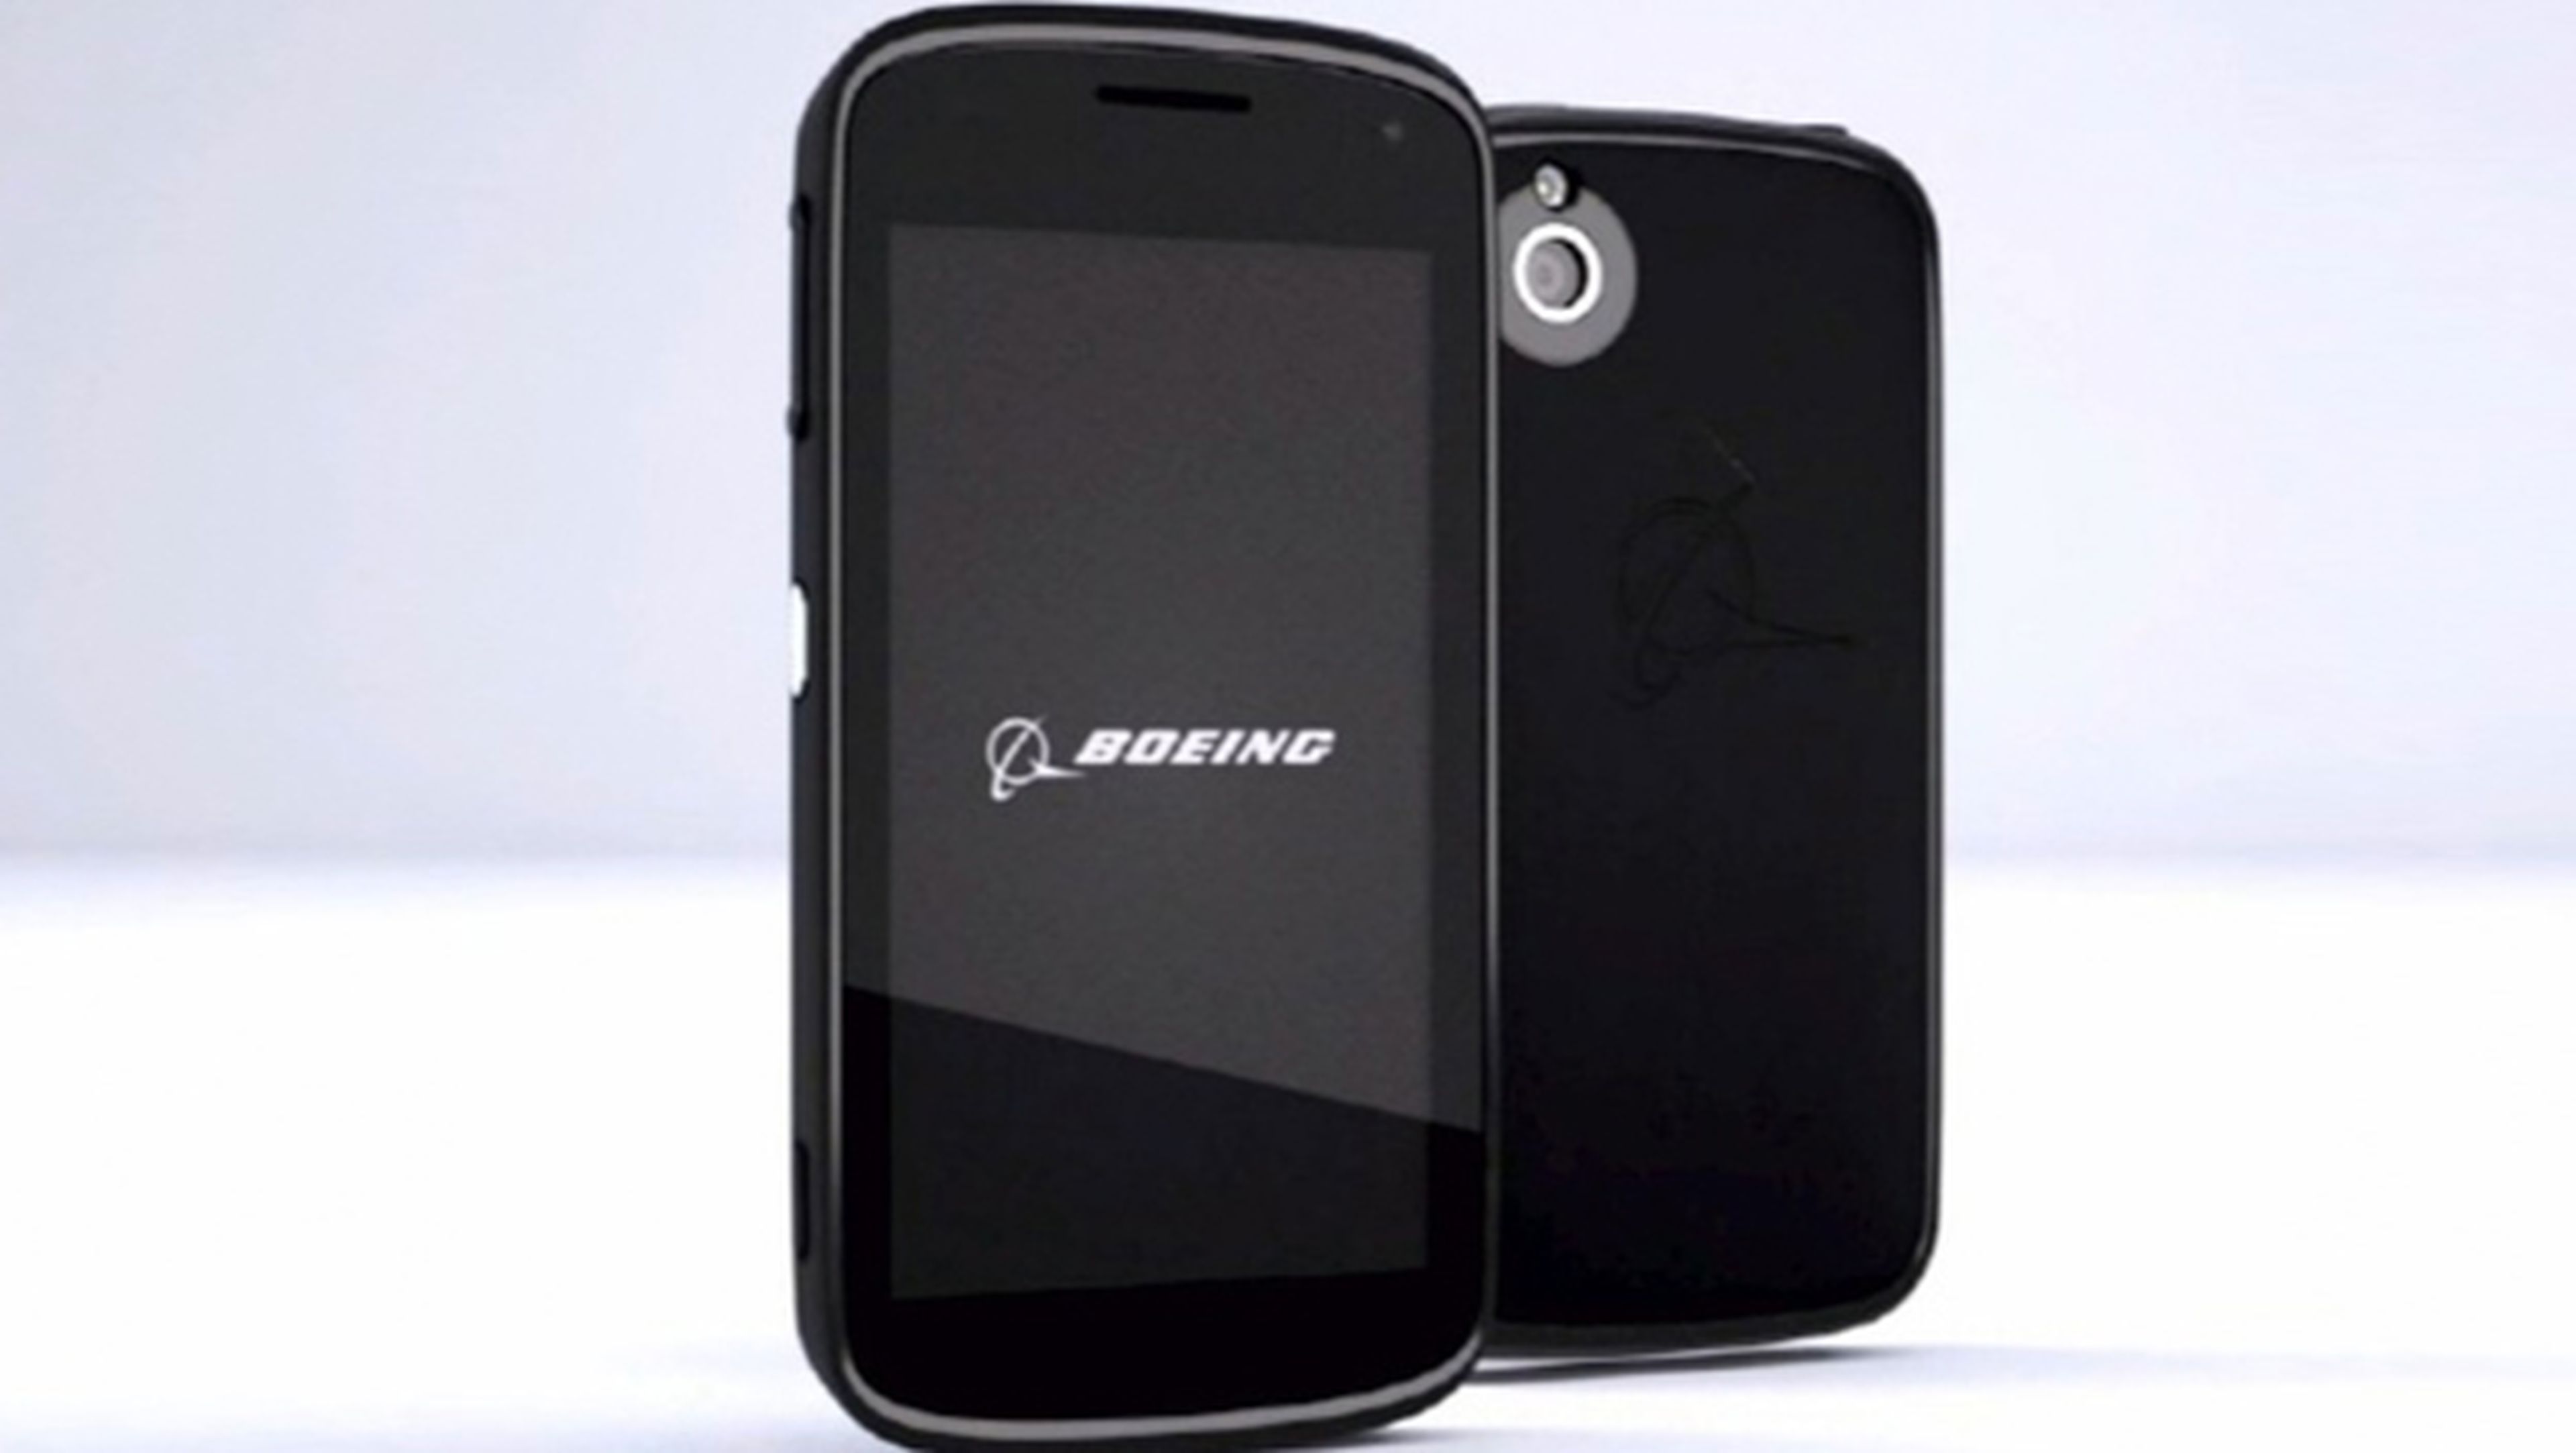 Boeing Black el smartphone antiespías